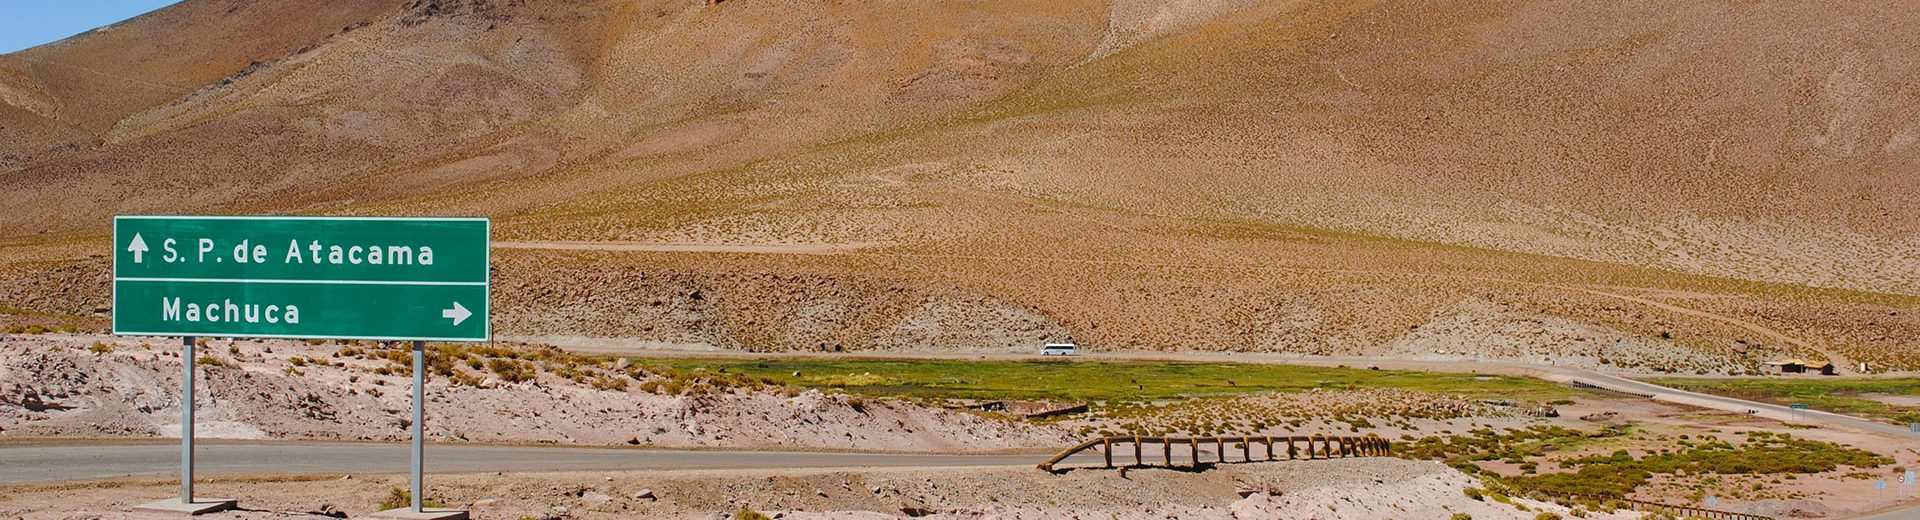 Onde fica São Pedro de Atacama? Lugar incrível ao norte de Chile